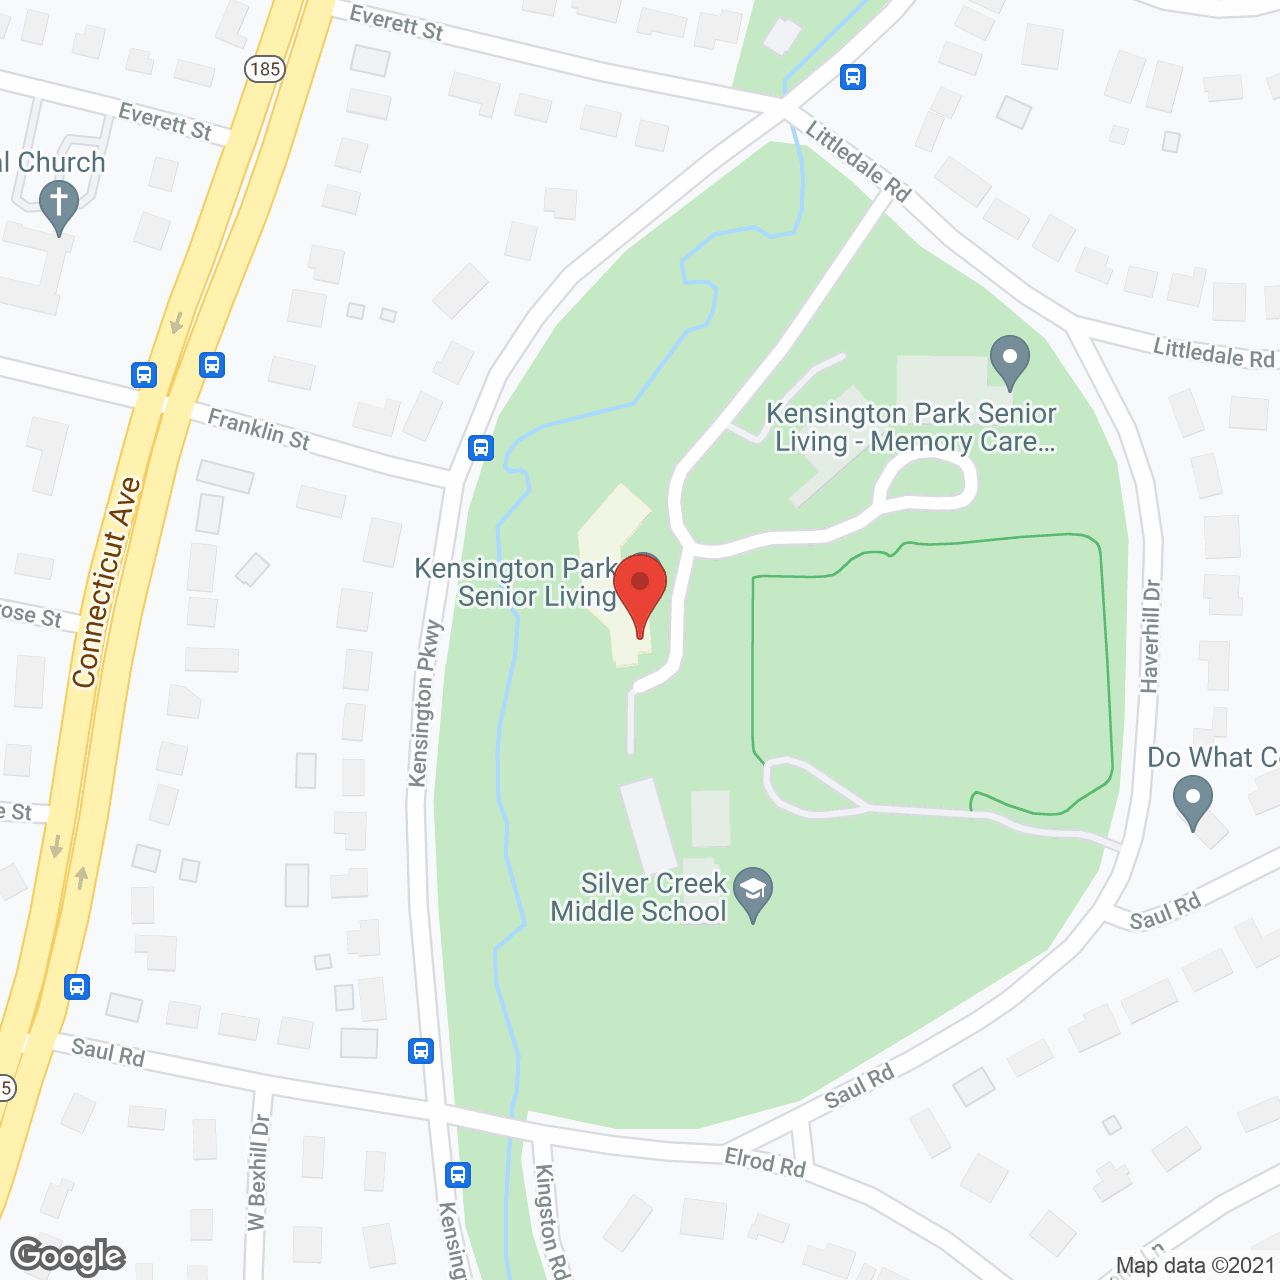 Kensington Park Senior Living in google map